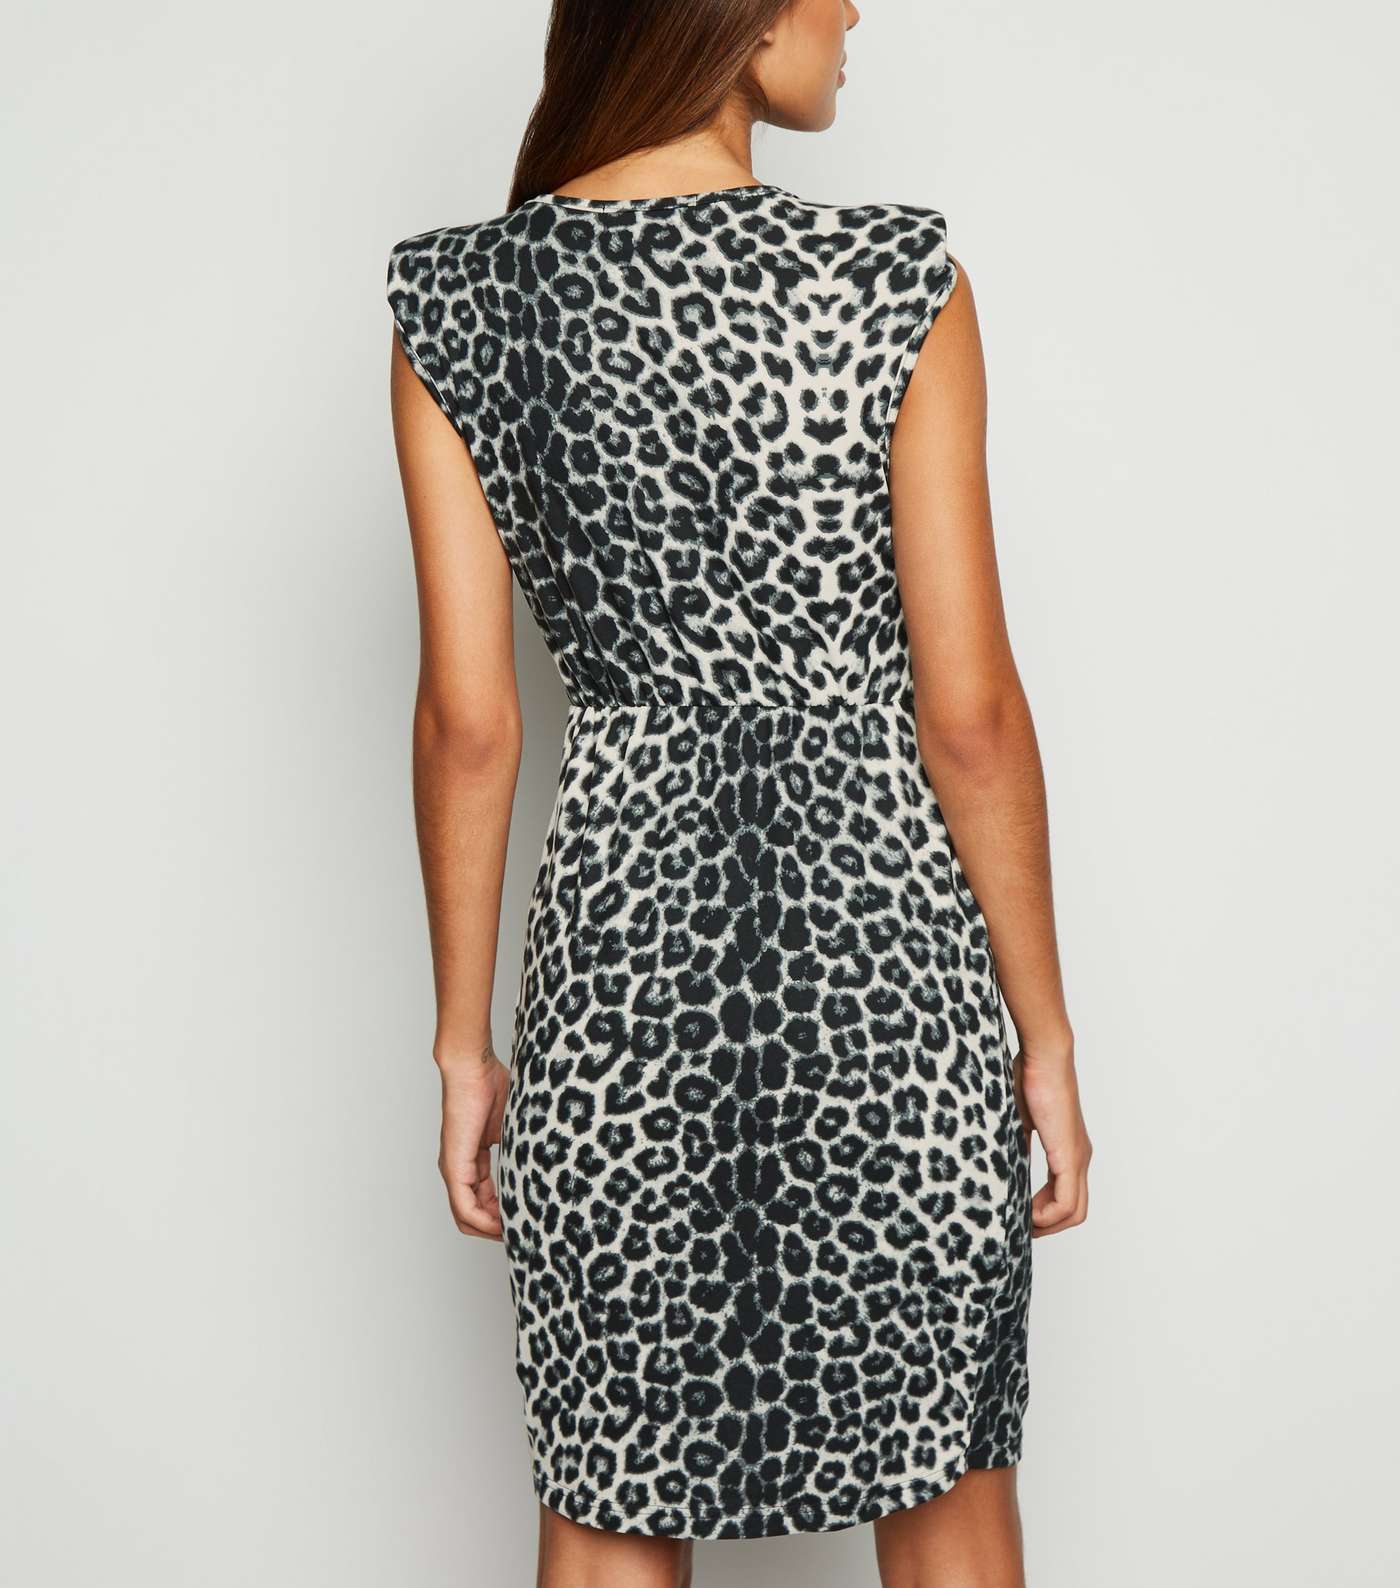 Mela Black Leopard Print Belted Dress Image 3